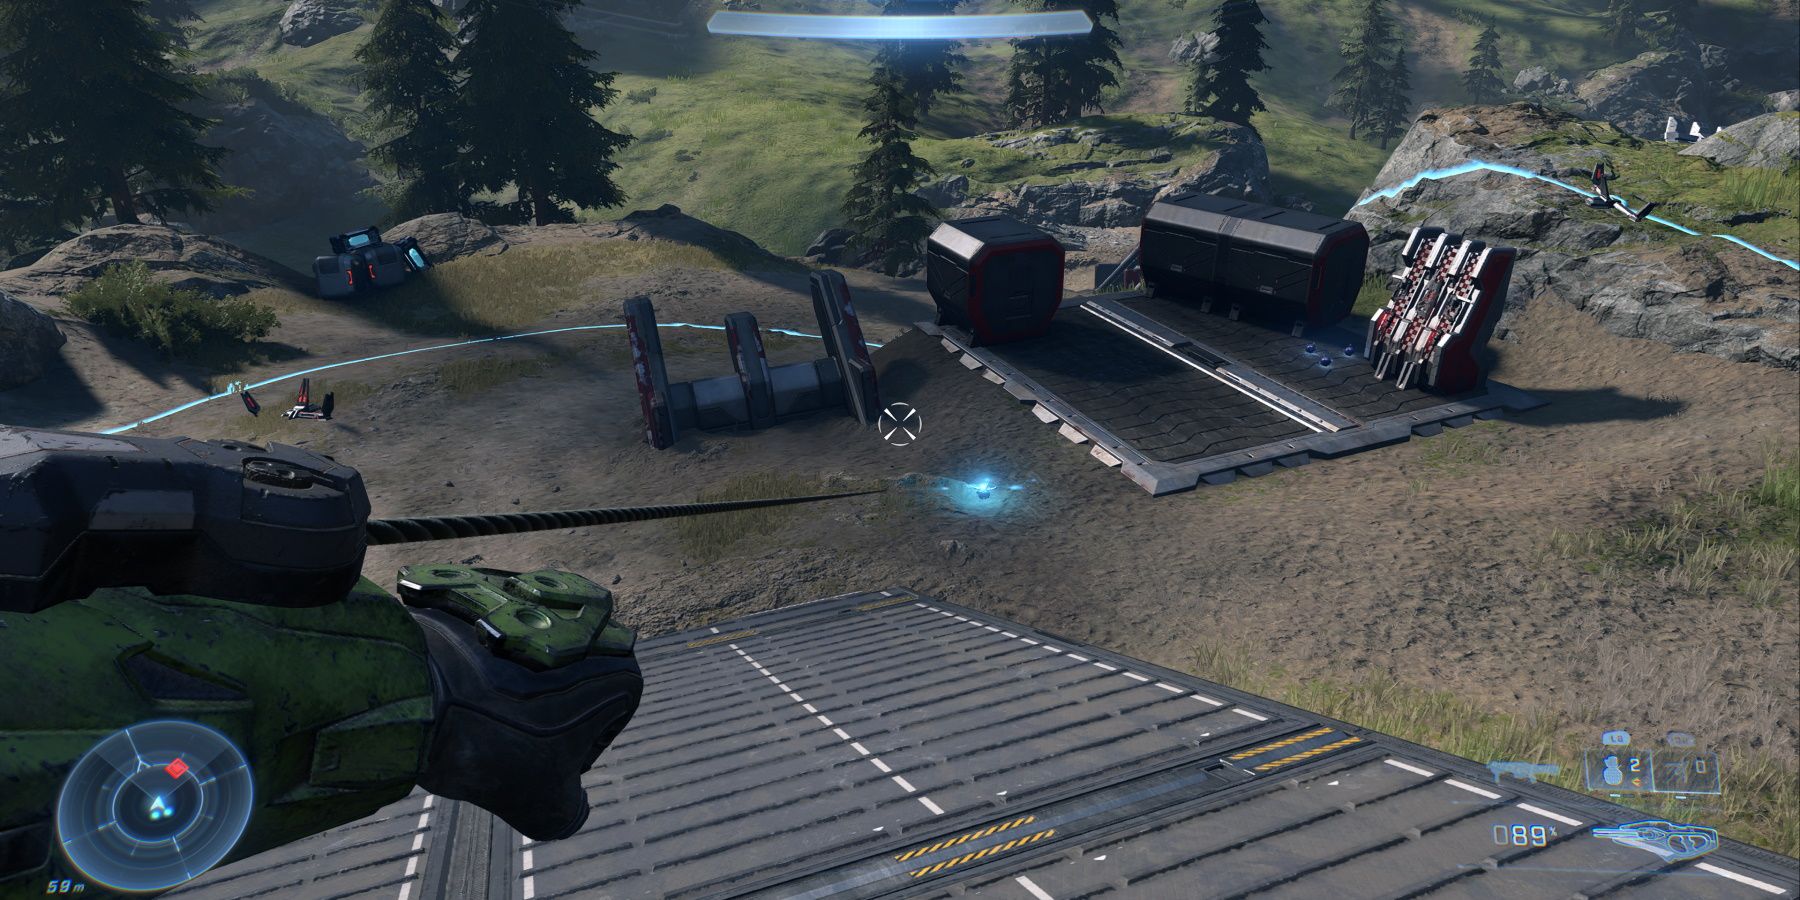 Halo Infinite using Threat Sensor and Grappleshot